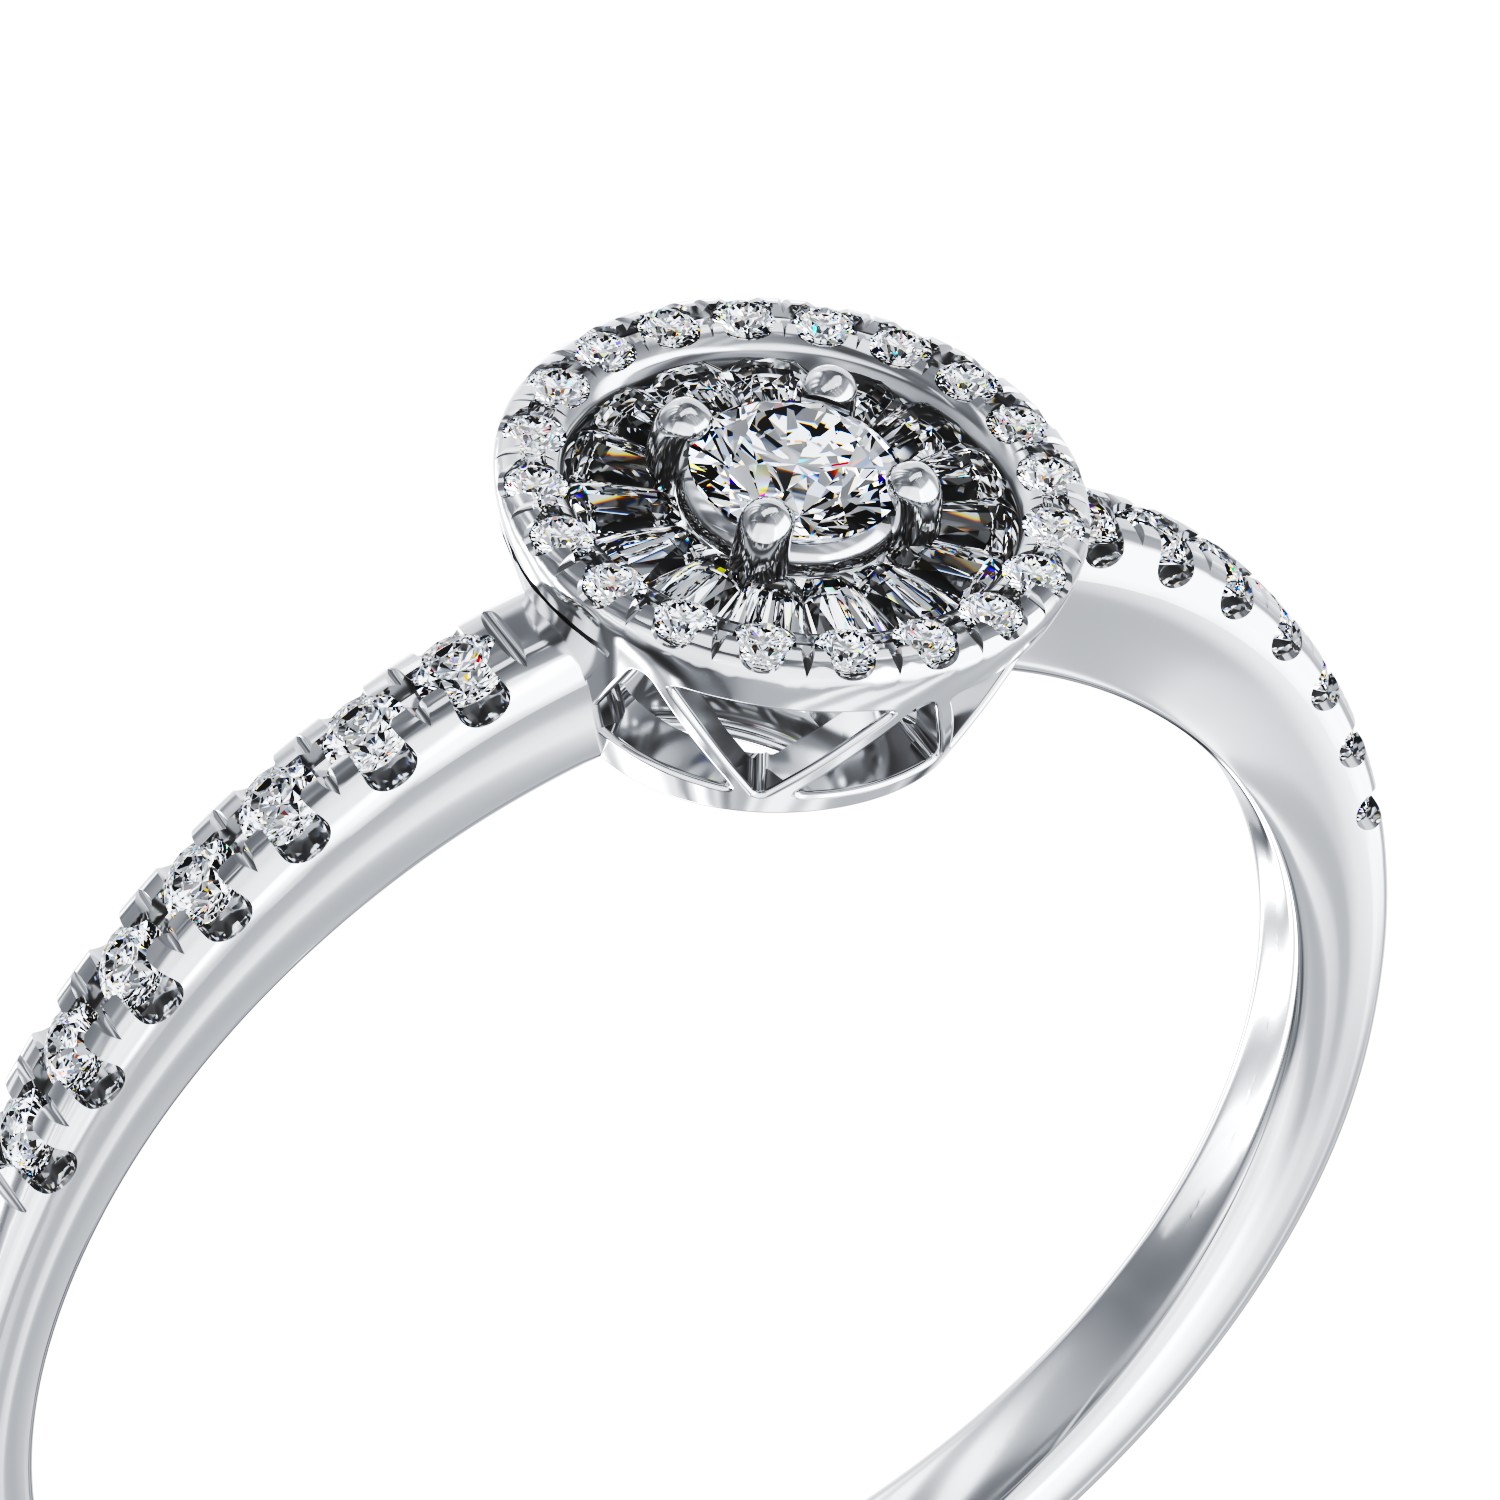 Eljegyzési gyűrű 18K-os fehér aranyból 0,22ct gyémánttal és 0,08ct gyémántokkal. Gramm: 2,4